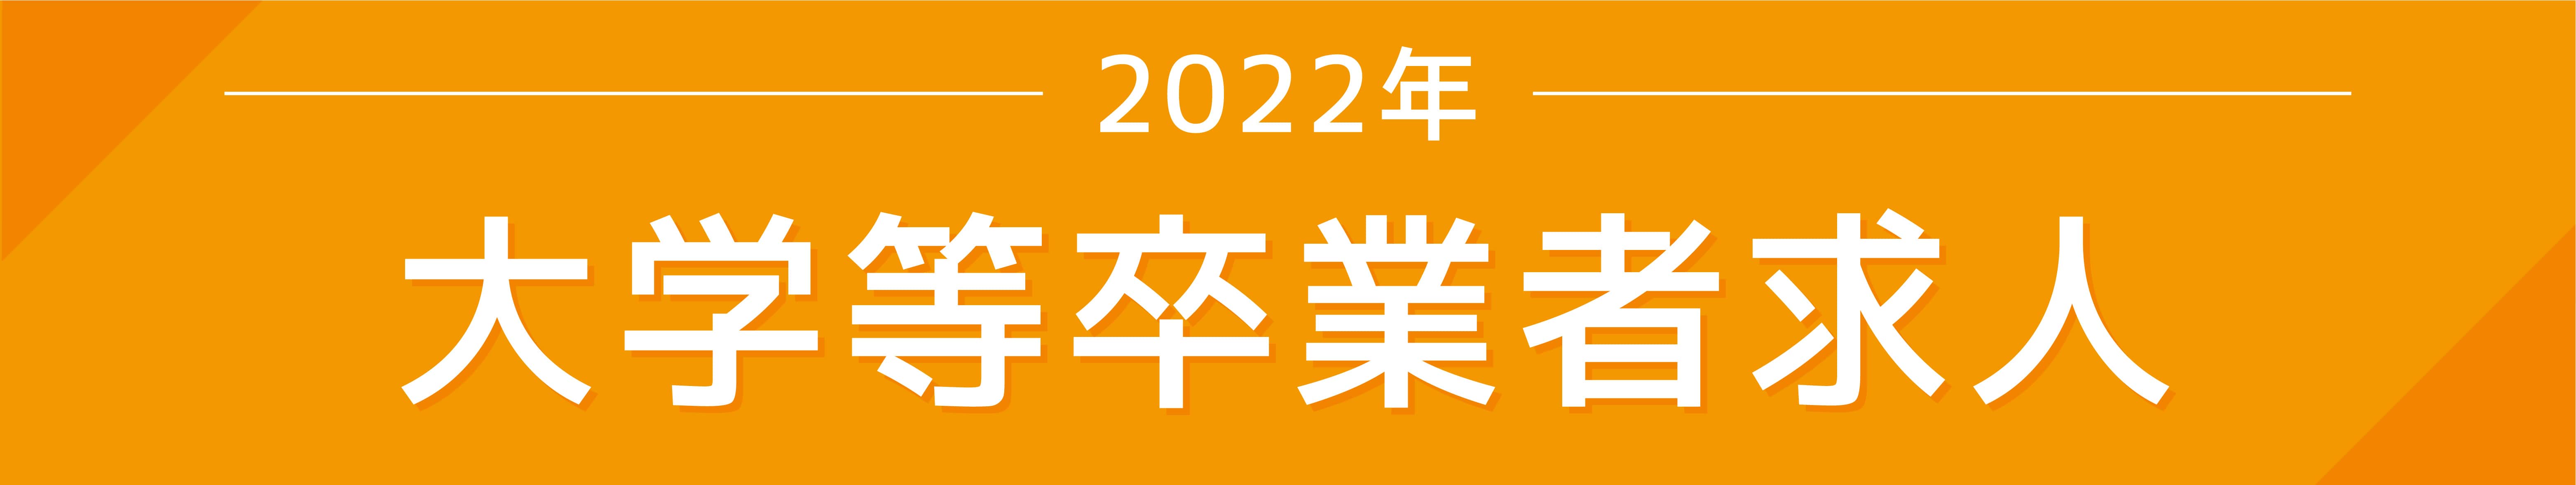 2022年度新卒採用（大卒）